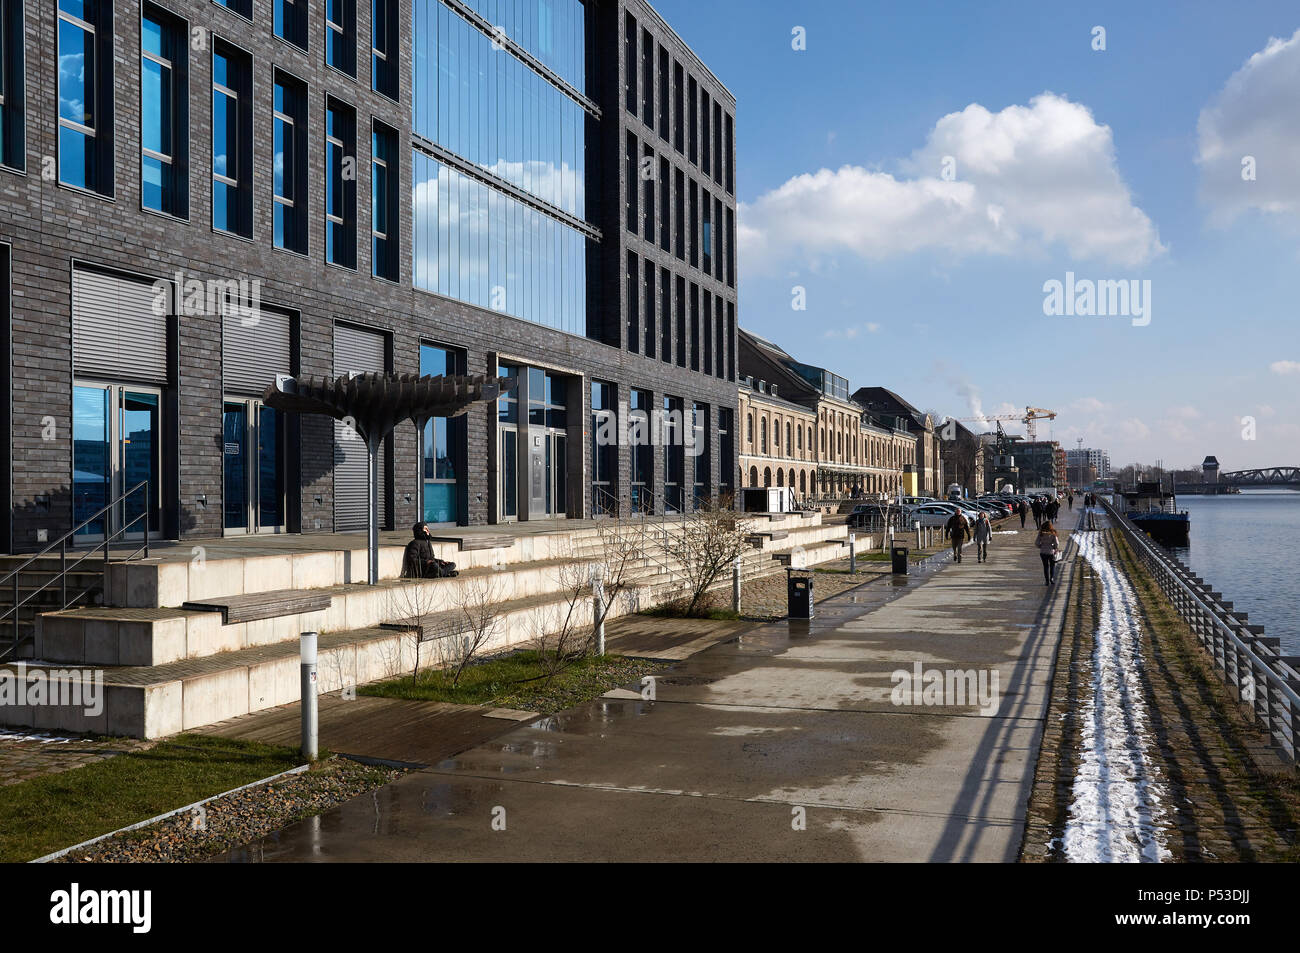 Berlín, Alemania - El edificio administrativo de VIMN Germany GmbH y otros edificios comerciales en las orillas del río Spree en Berlin-Friedrichshain. Foto de stock